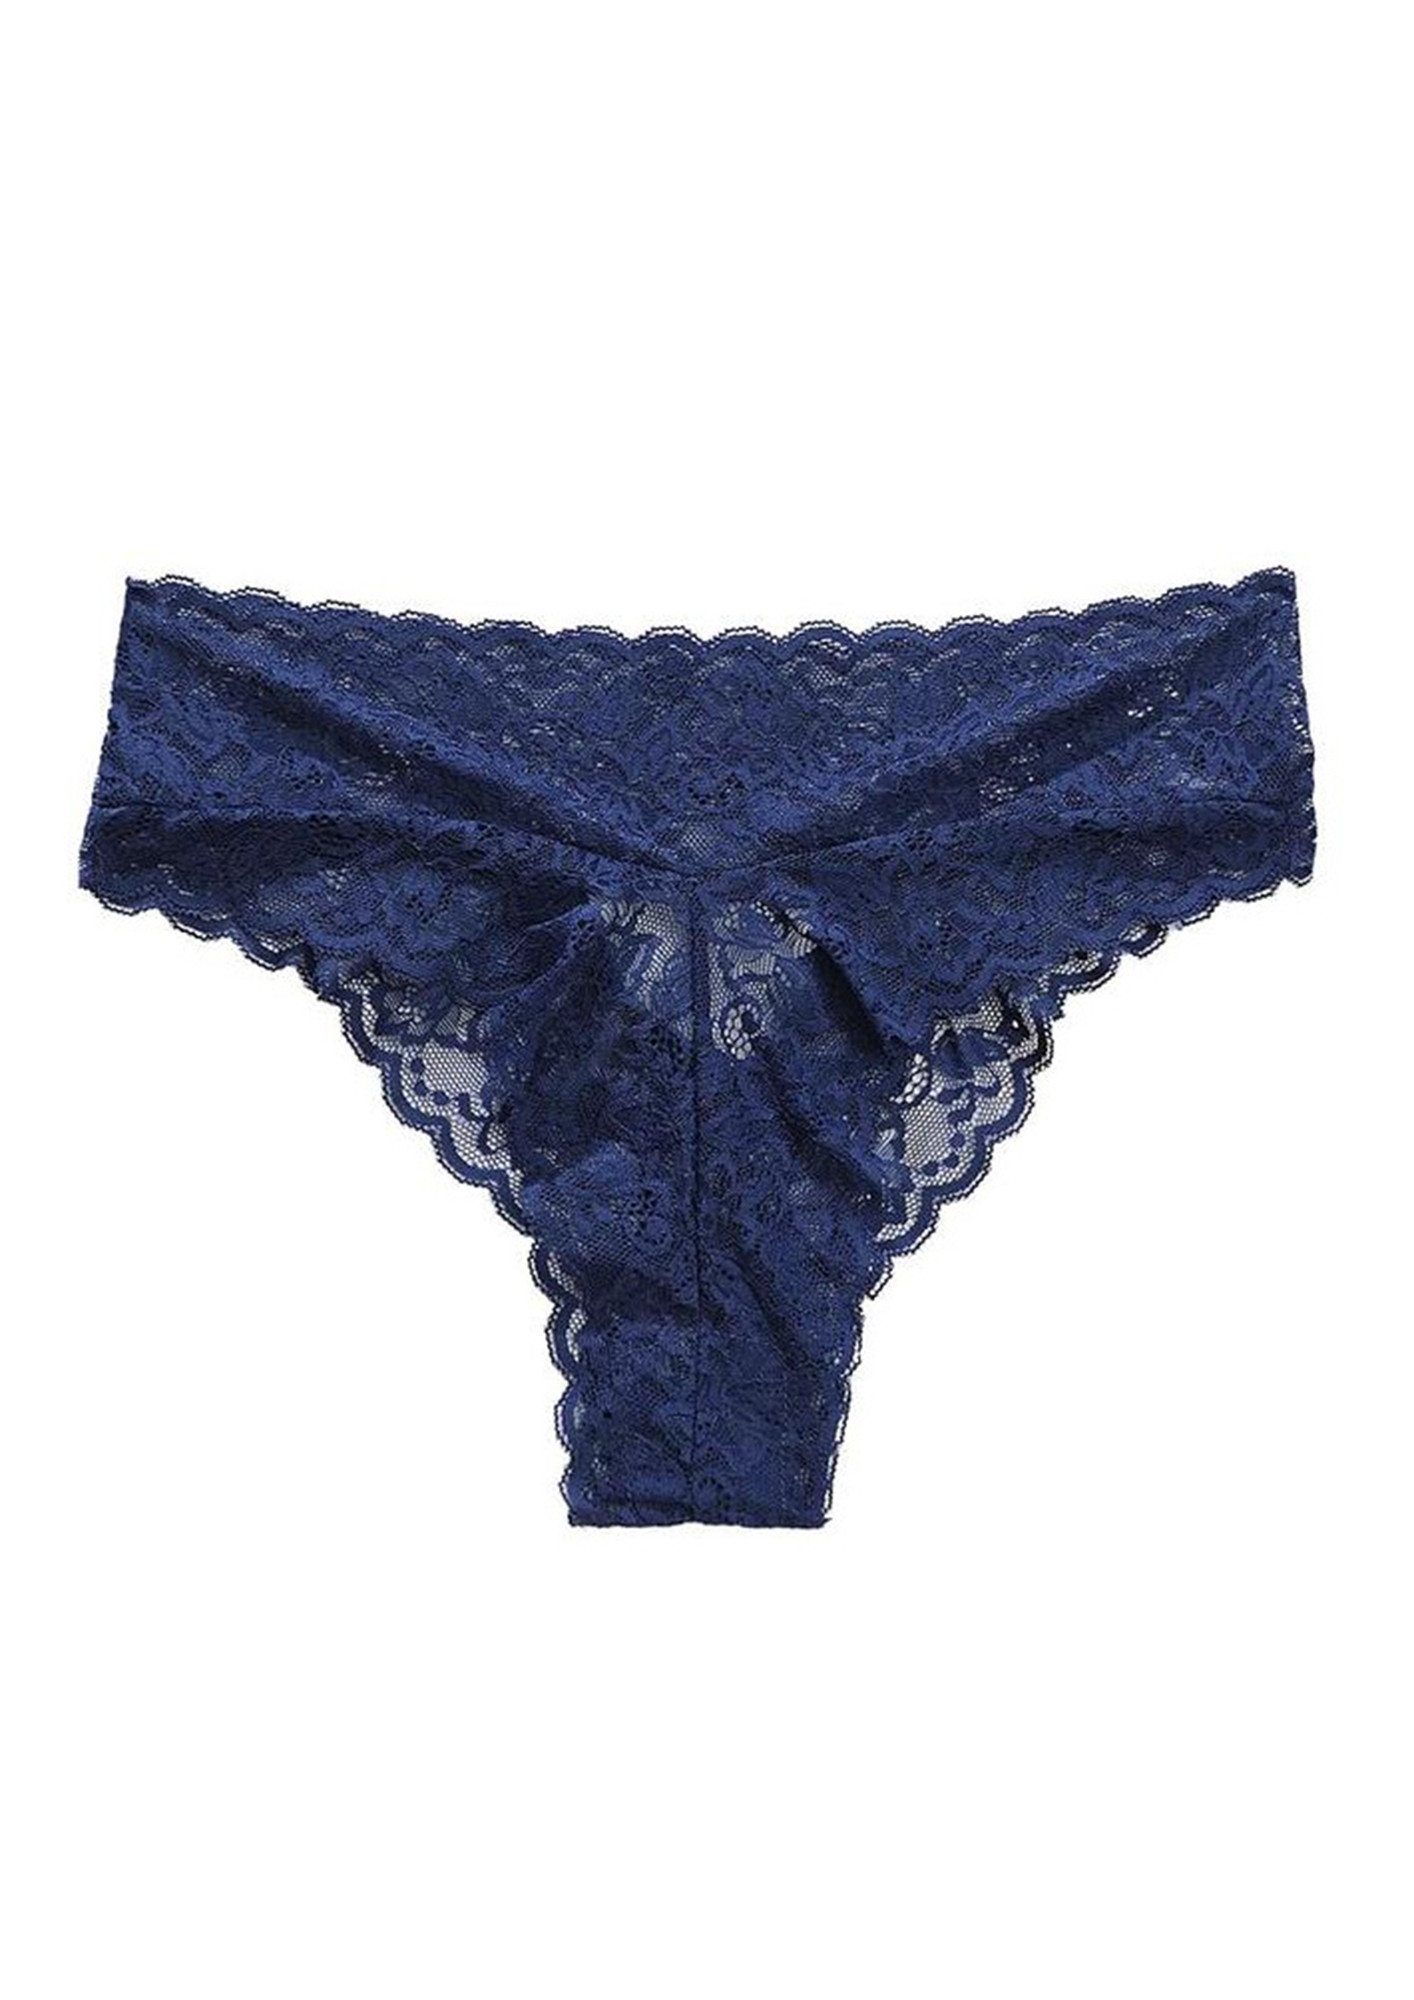 Navy Lace Thong, Shop Women's Lingerie & Underwear